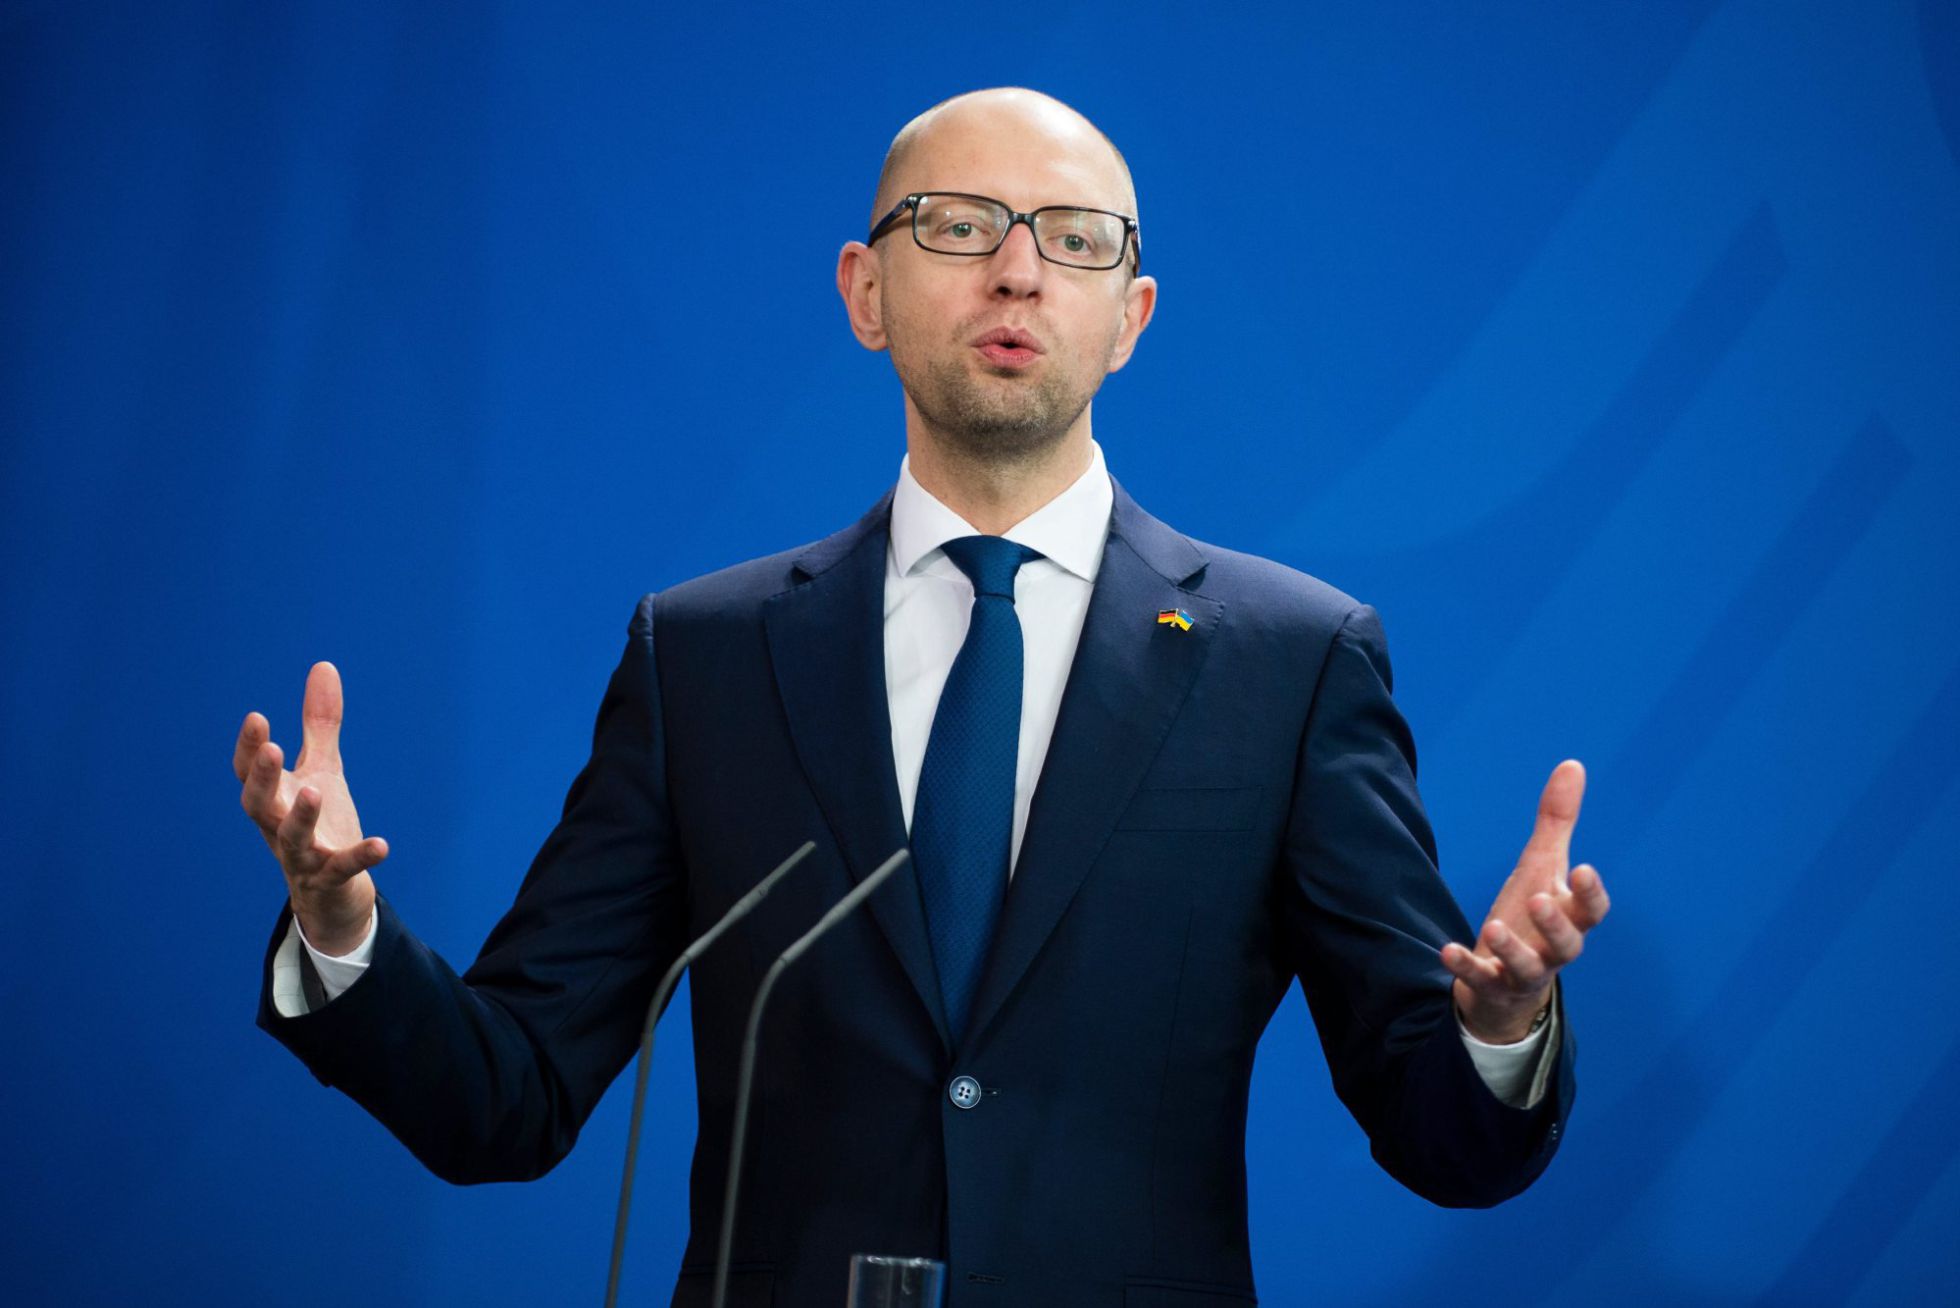 Dimite El Primer Ministro De Ucrania Internacional El PaÍs 4492